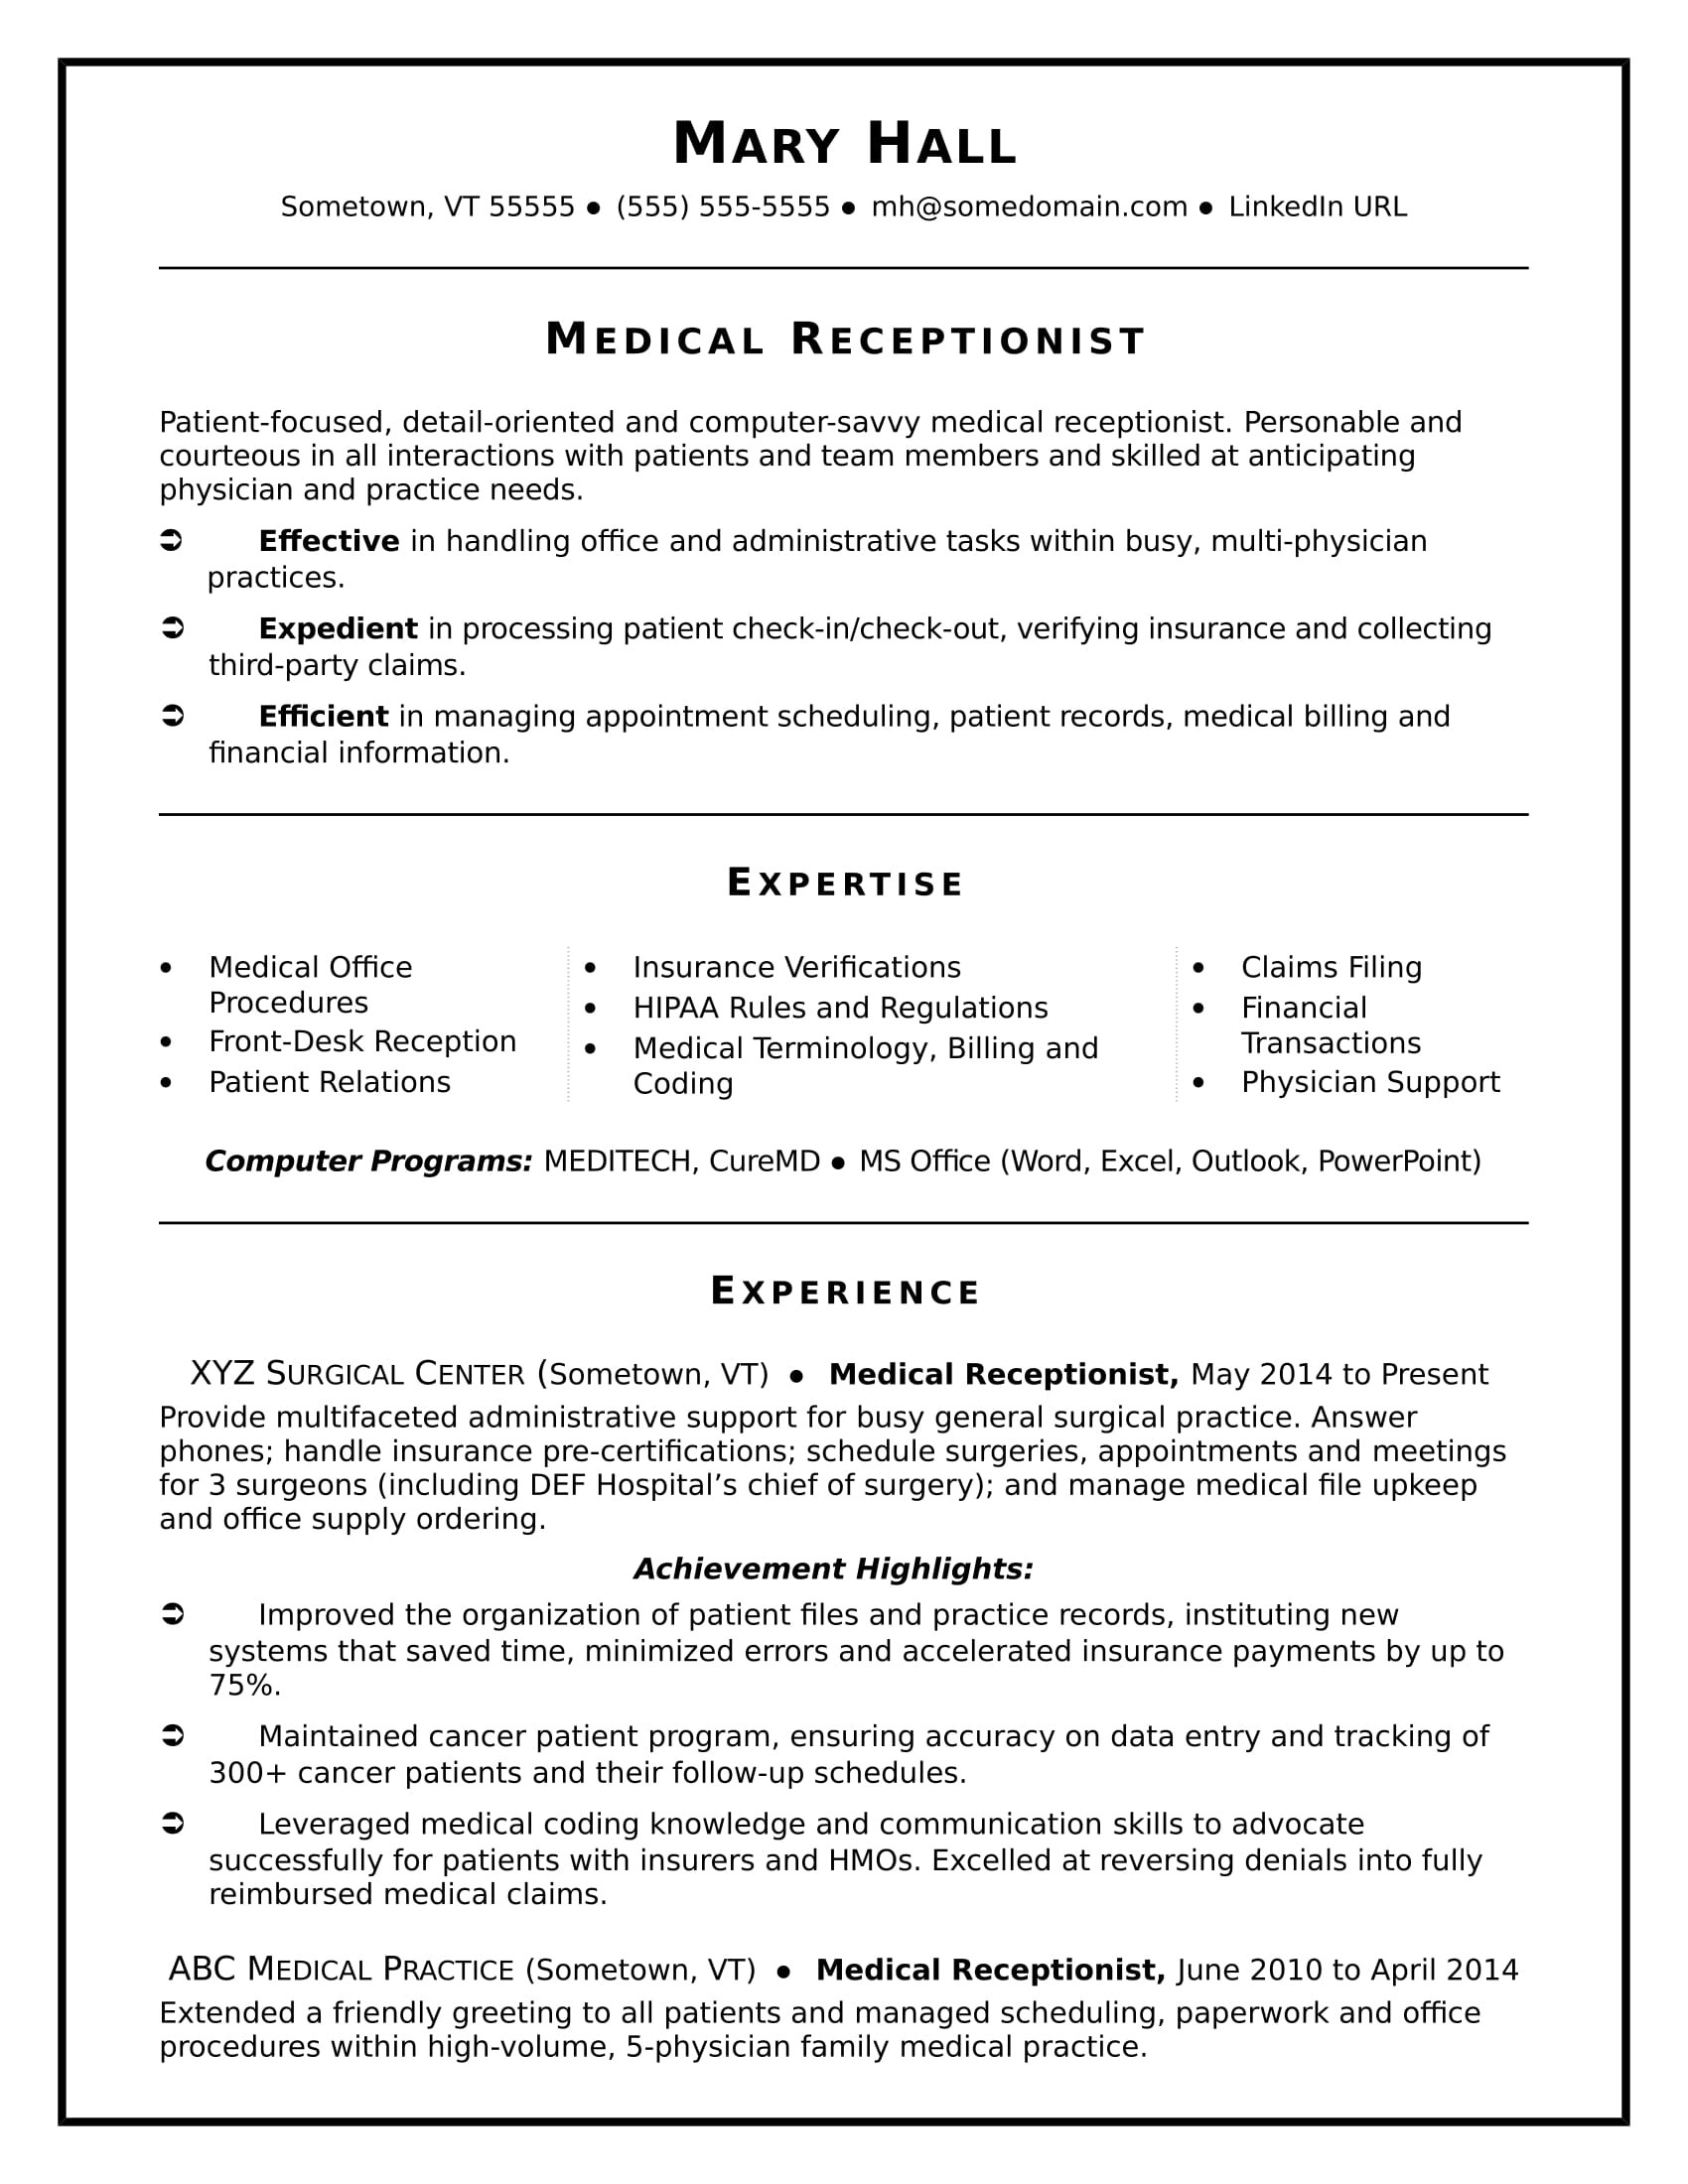 Sample Resume for Customer Service Healthcare Medical Receptionist Resume Sample Monster.com